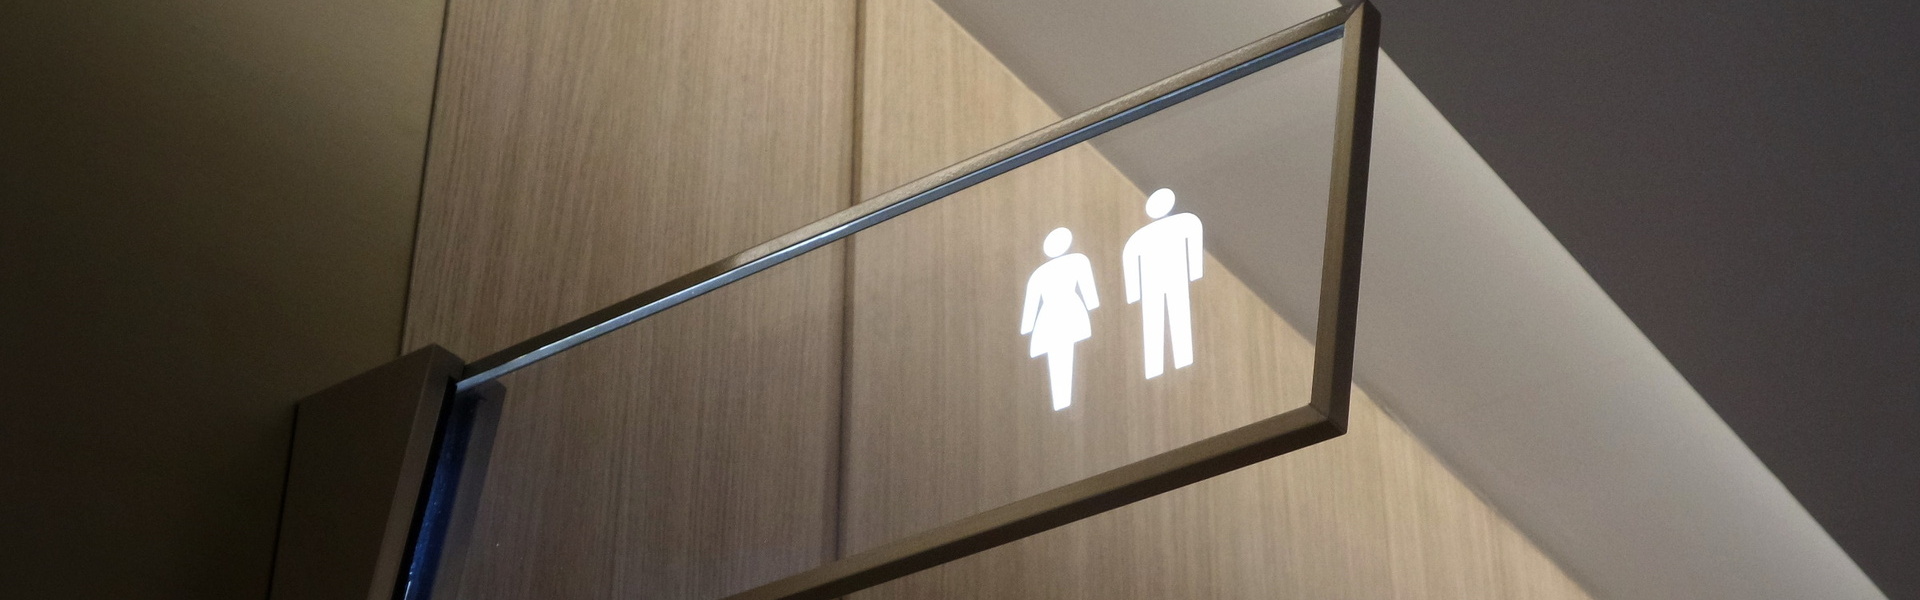 Ein Wandschild zur Anzeige der Toiletten mit beiden Geschlechtern